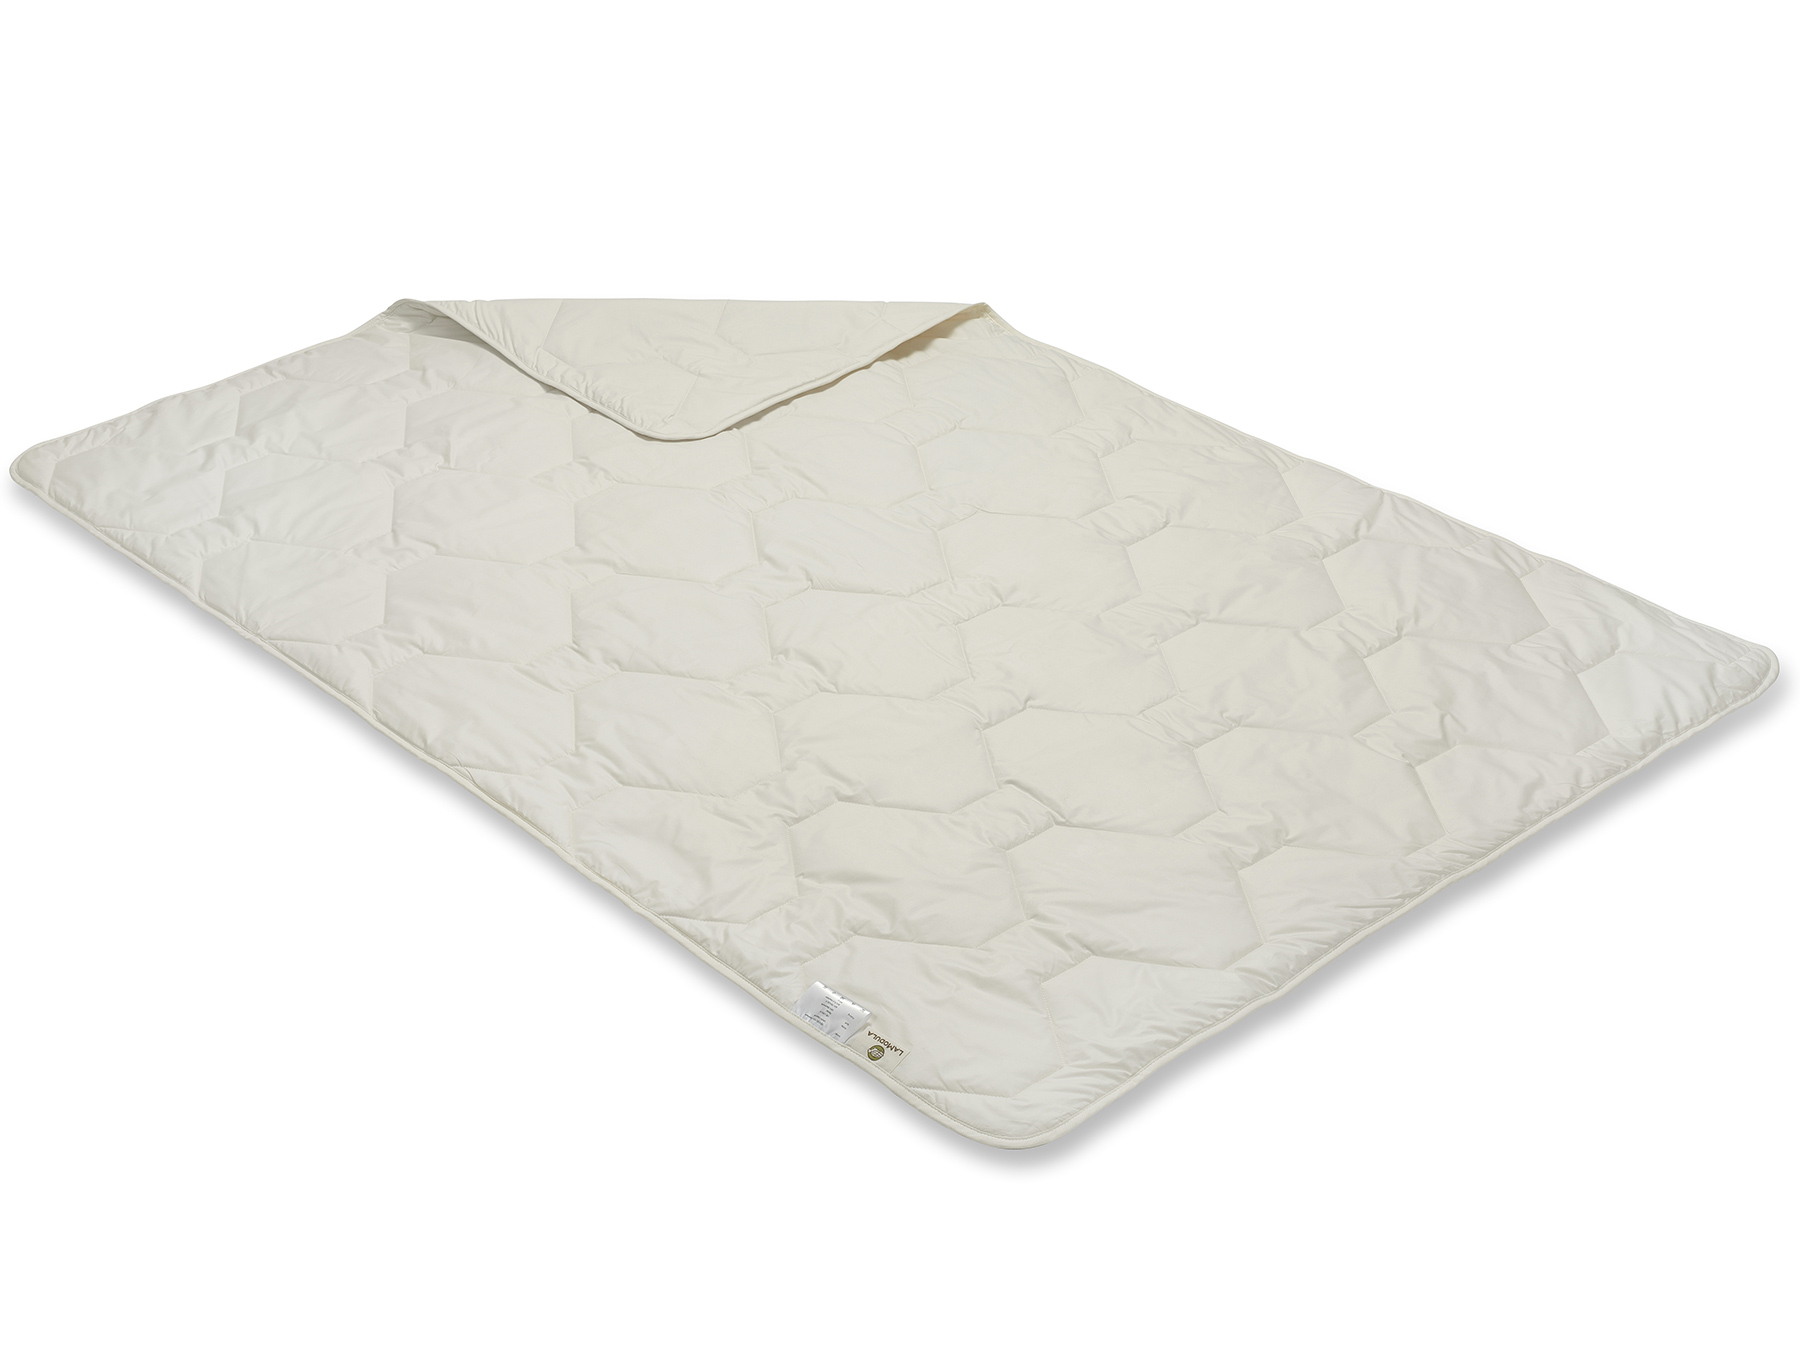 Durch die Herstellung mit der Vielnadeltechnik entsteht ein gleichmäßiges Muster. Die Decke schimmert cremig.